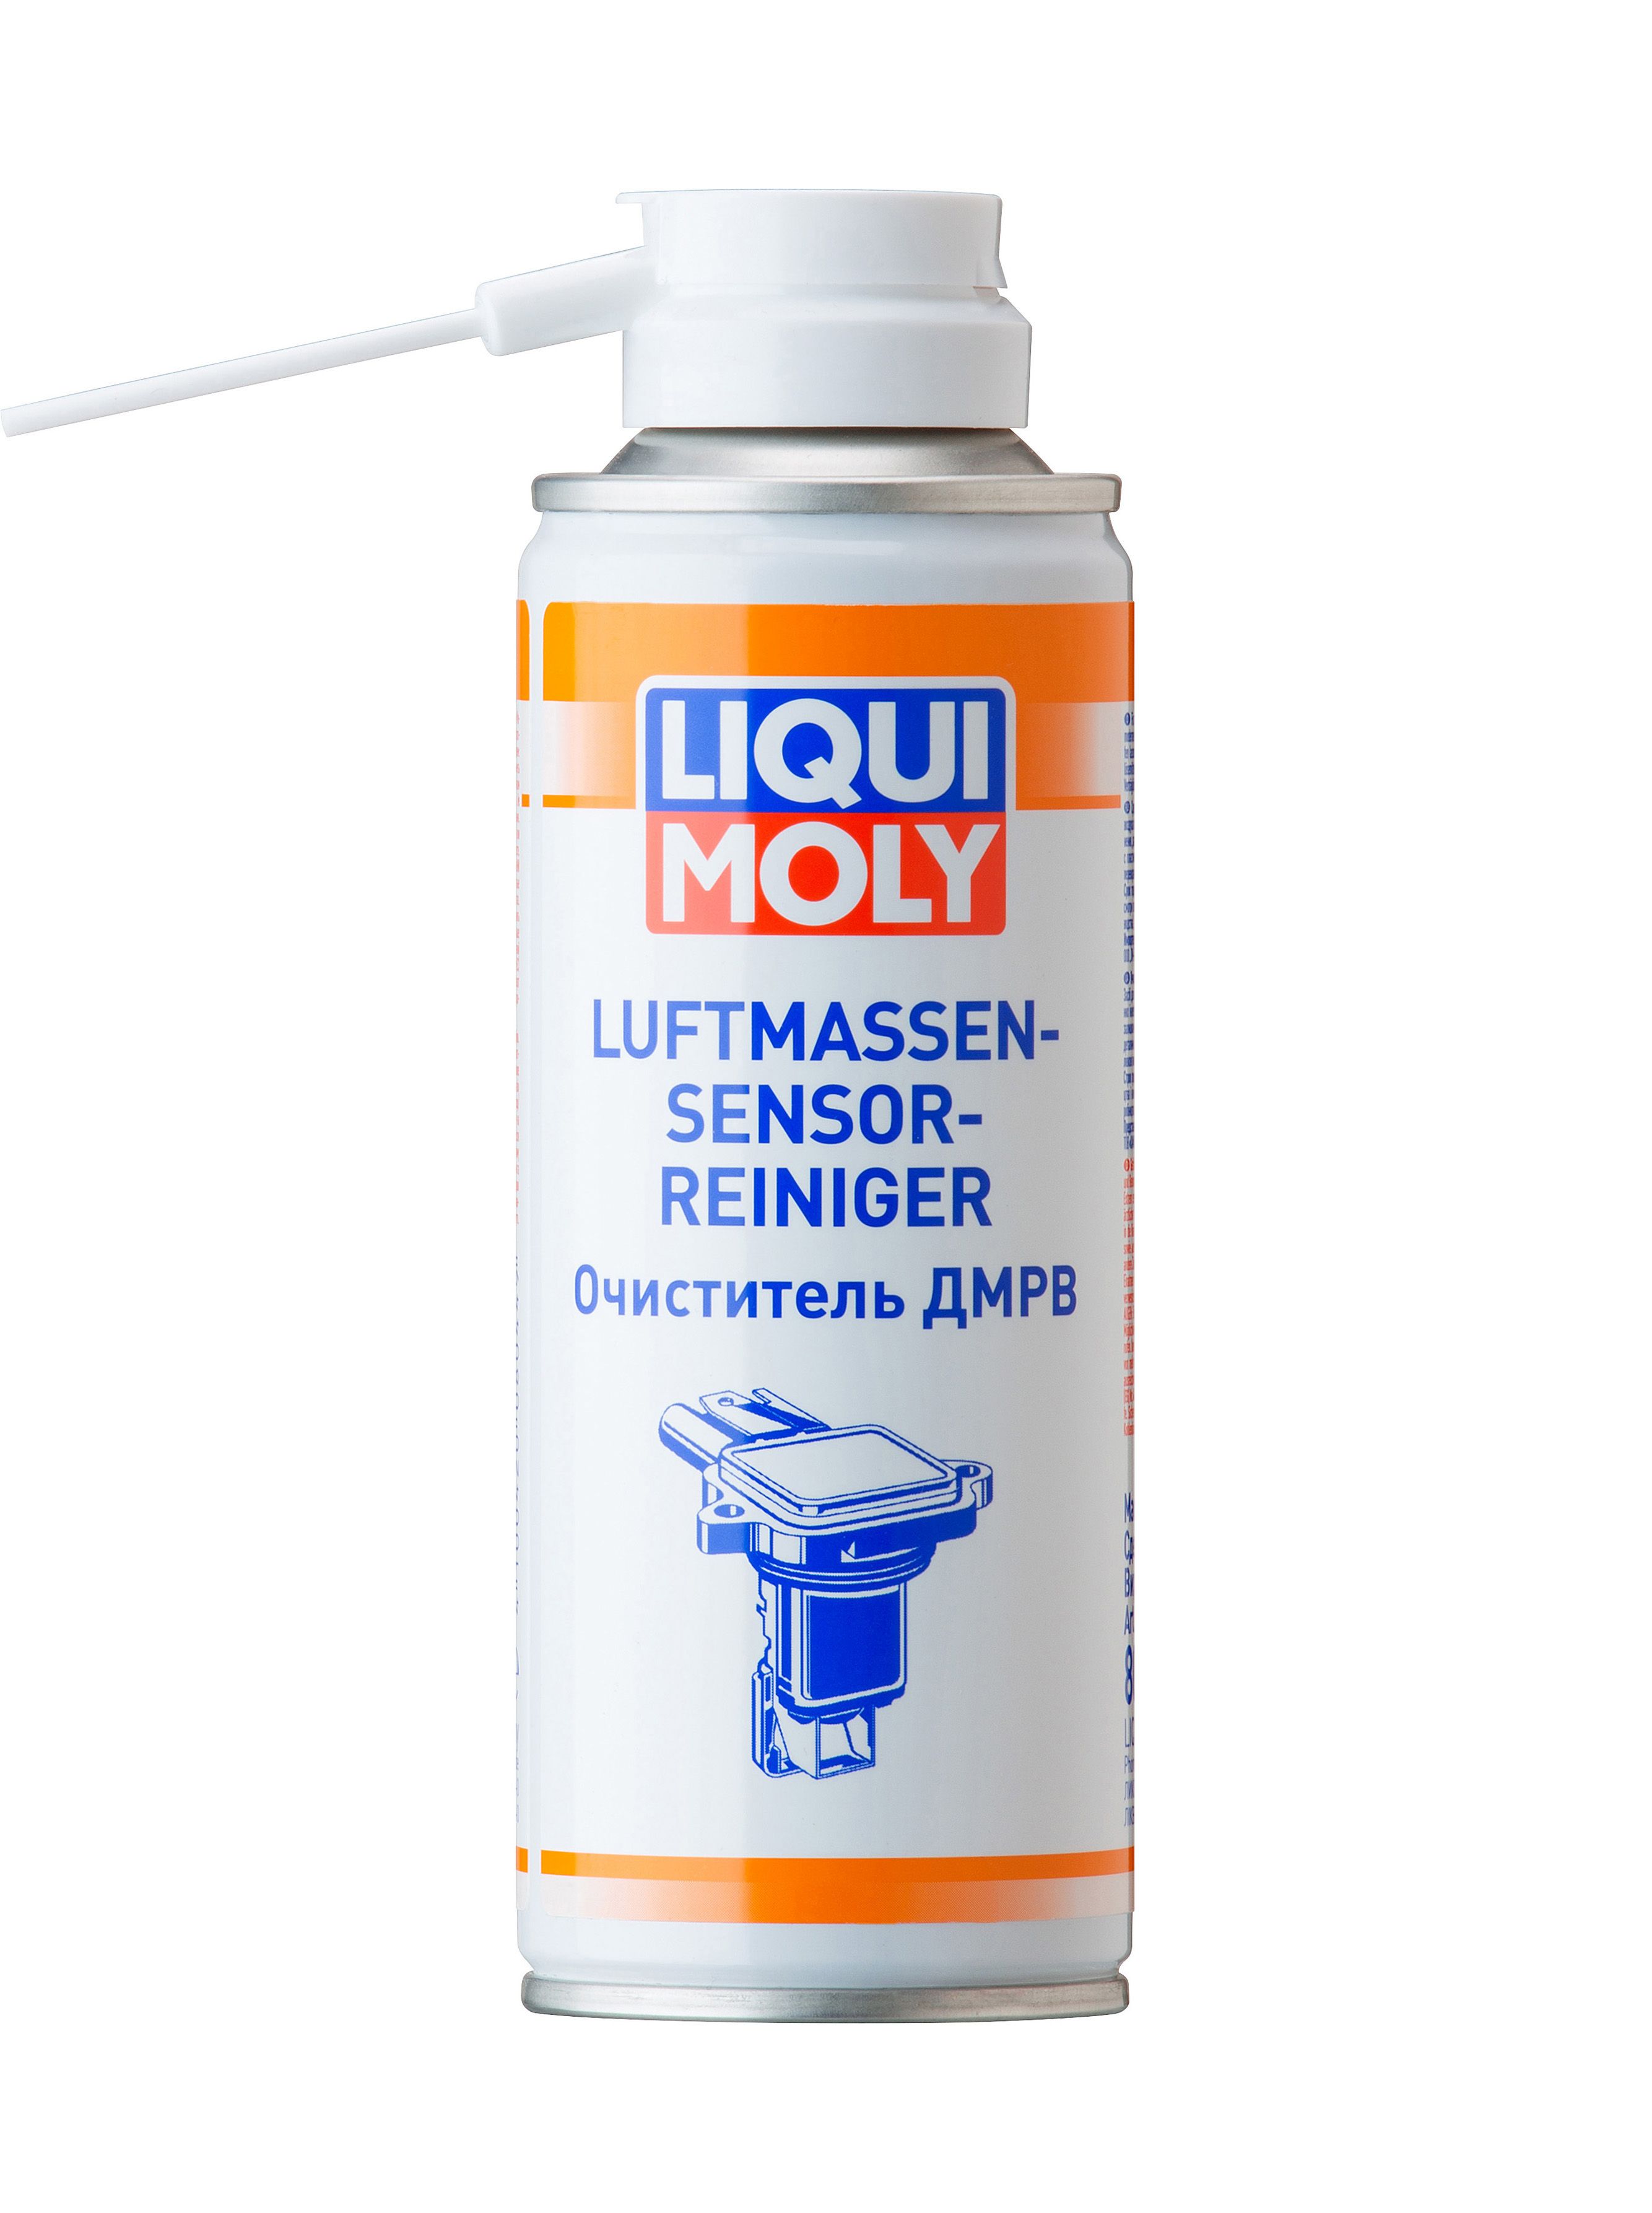 Очиститель ДМРВ LiquiMoly Luftmassensensor Rein 0,2 л 8044